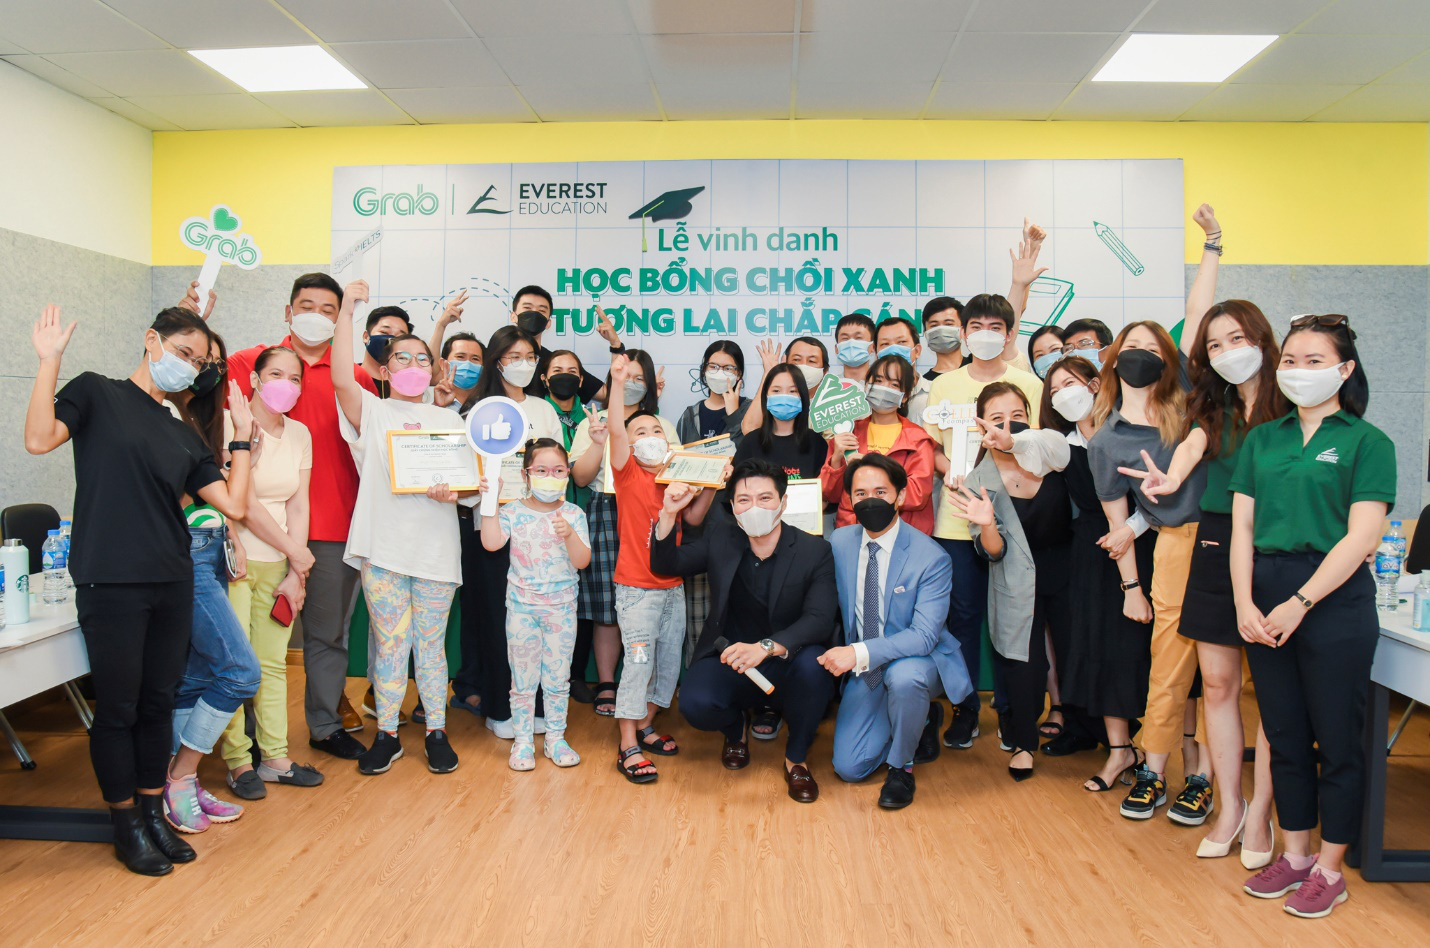 Grab Việt Nam và Everest Education chắp cánh tương lai con em đối tác qua chương trình “Học bổng chồi xanh – Tương lai chắp cánh” - Ảnh 1.